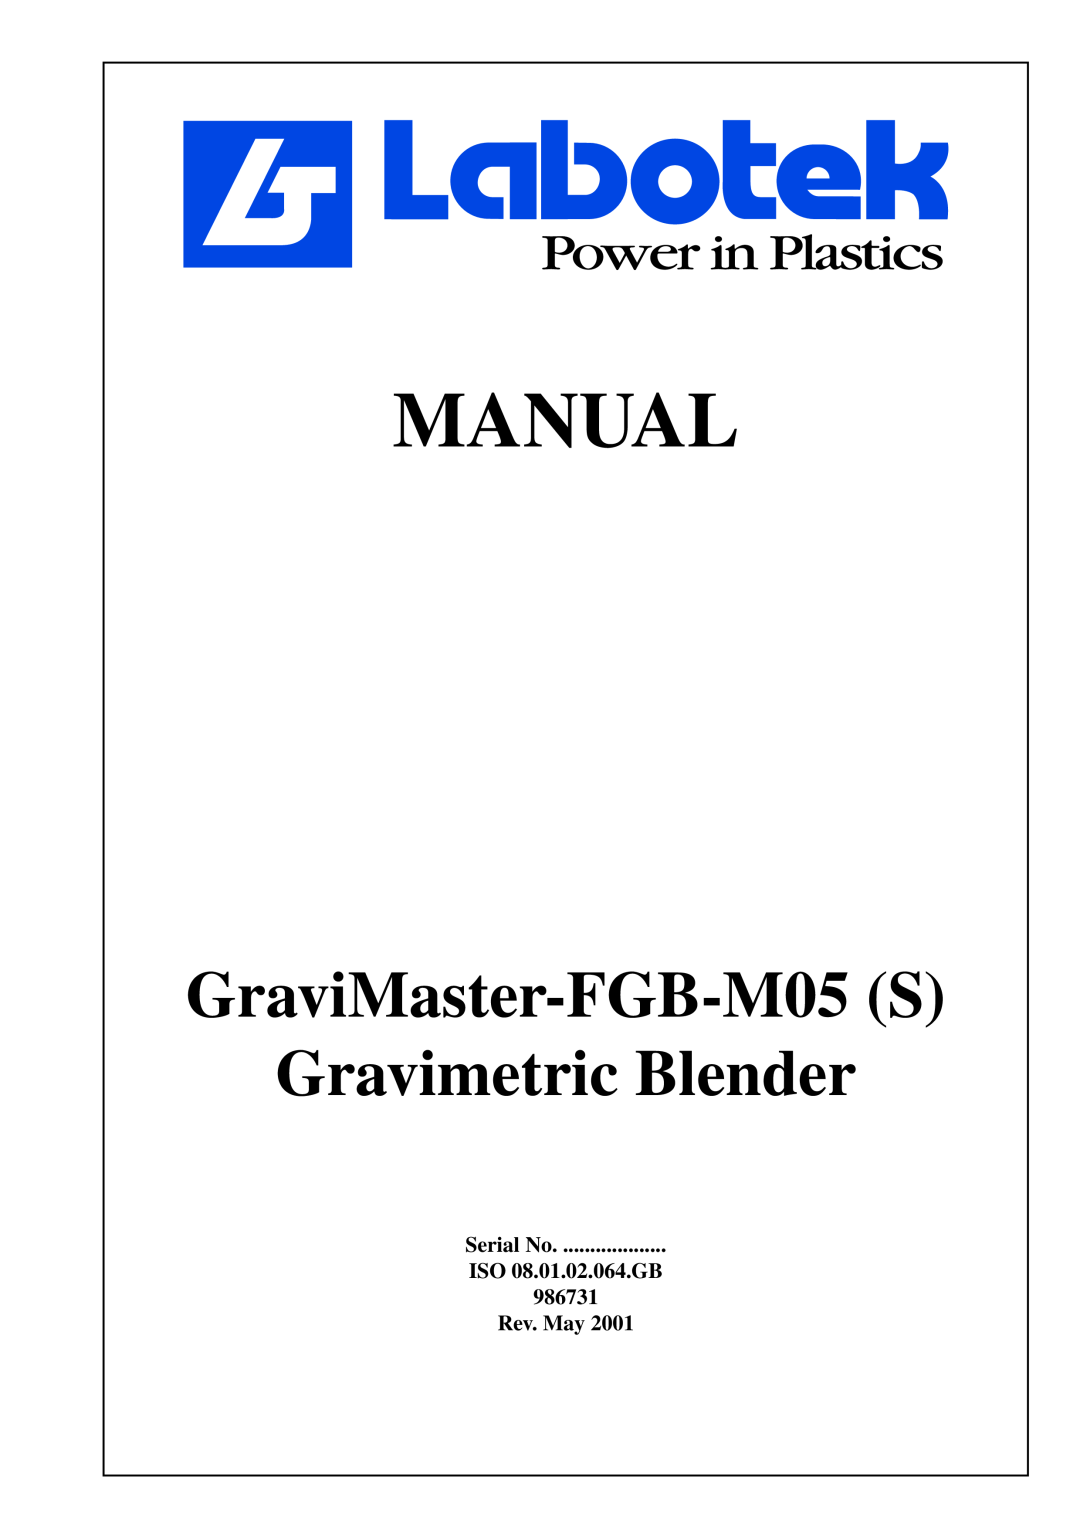 GE manual Serial No ISO 08.01.02.064.GB 986731 Rev. May, Manual, GraviMaster-FGB-M05S Gravimetric Blender 